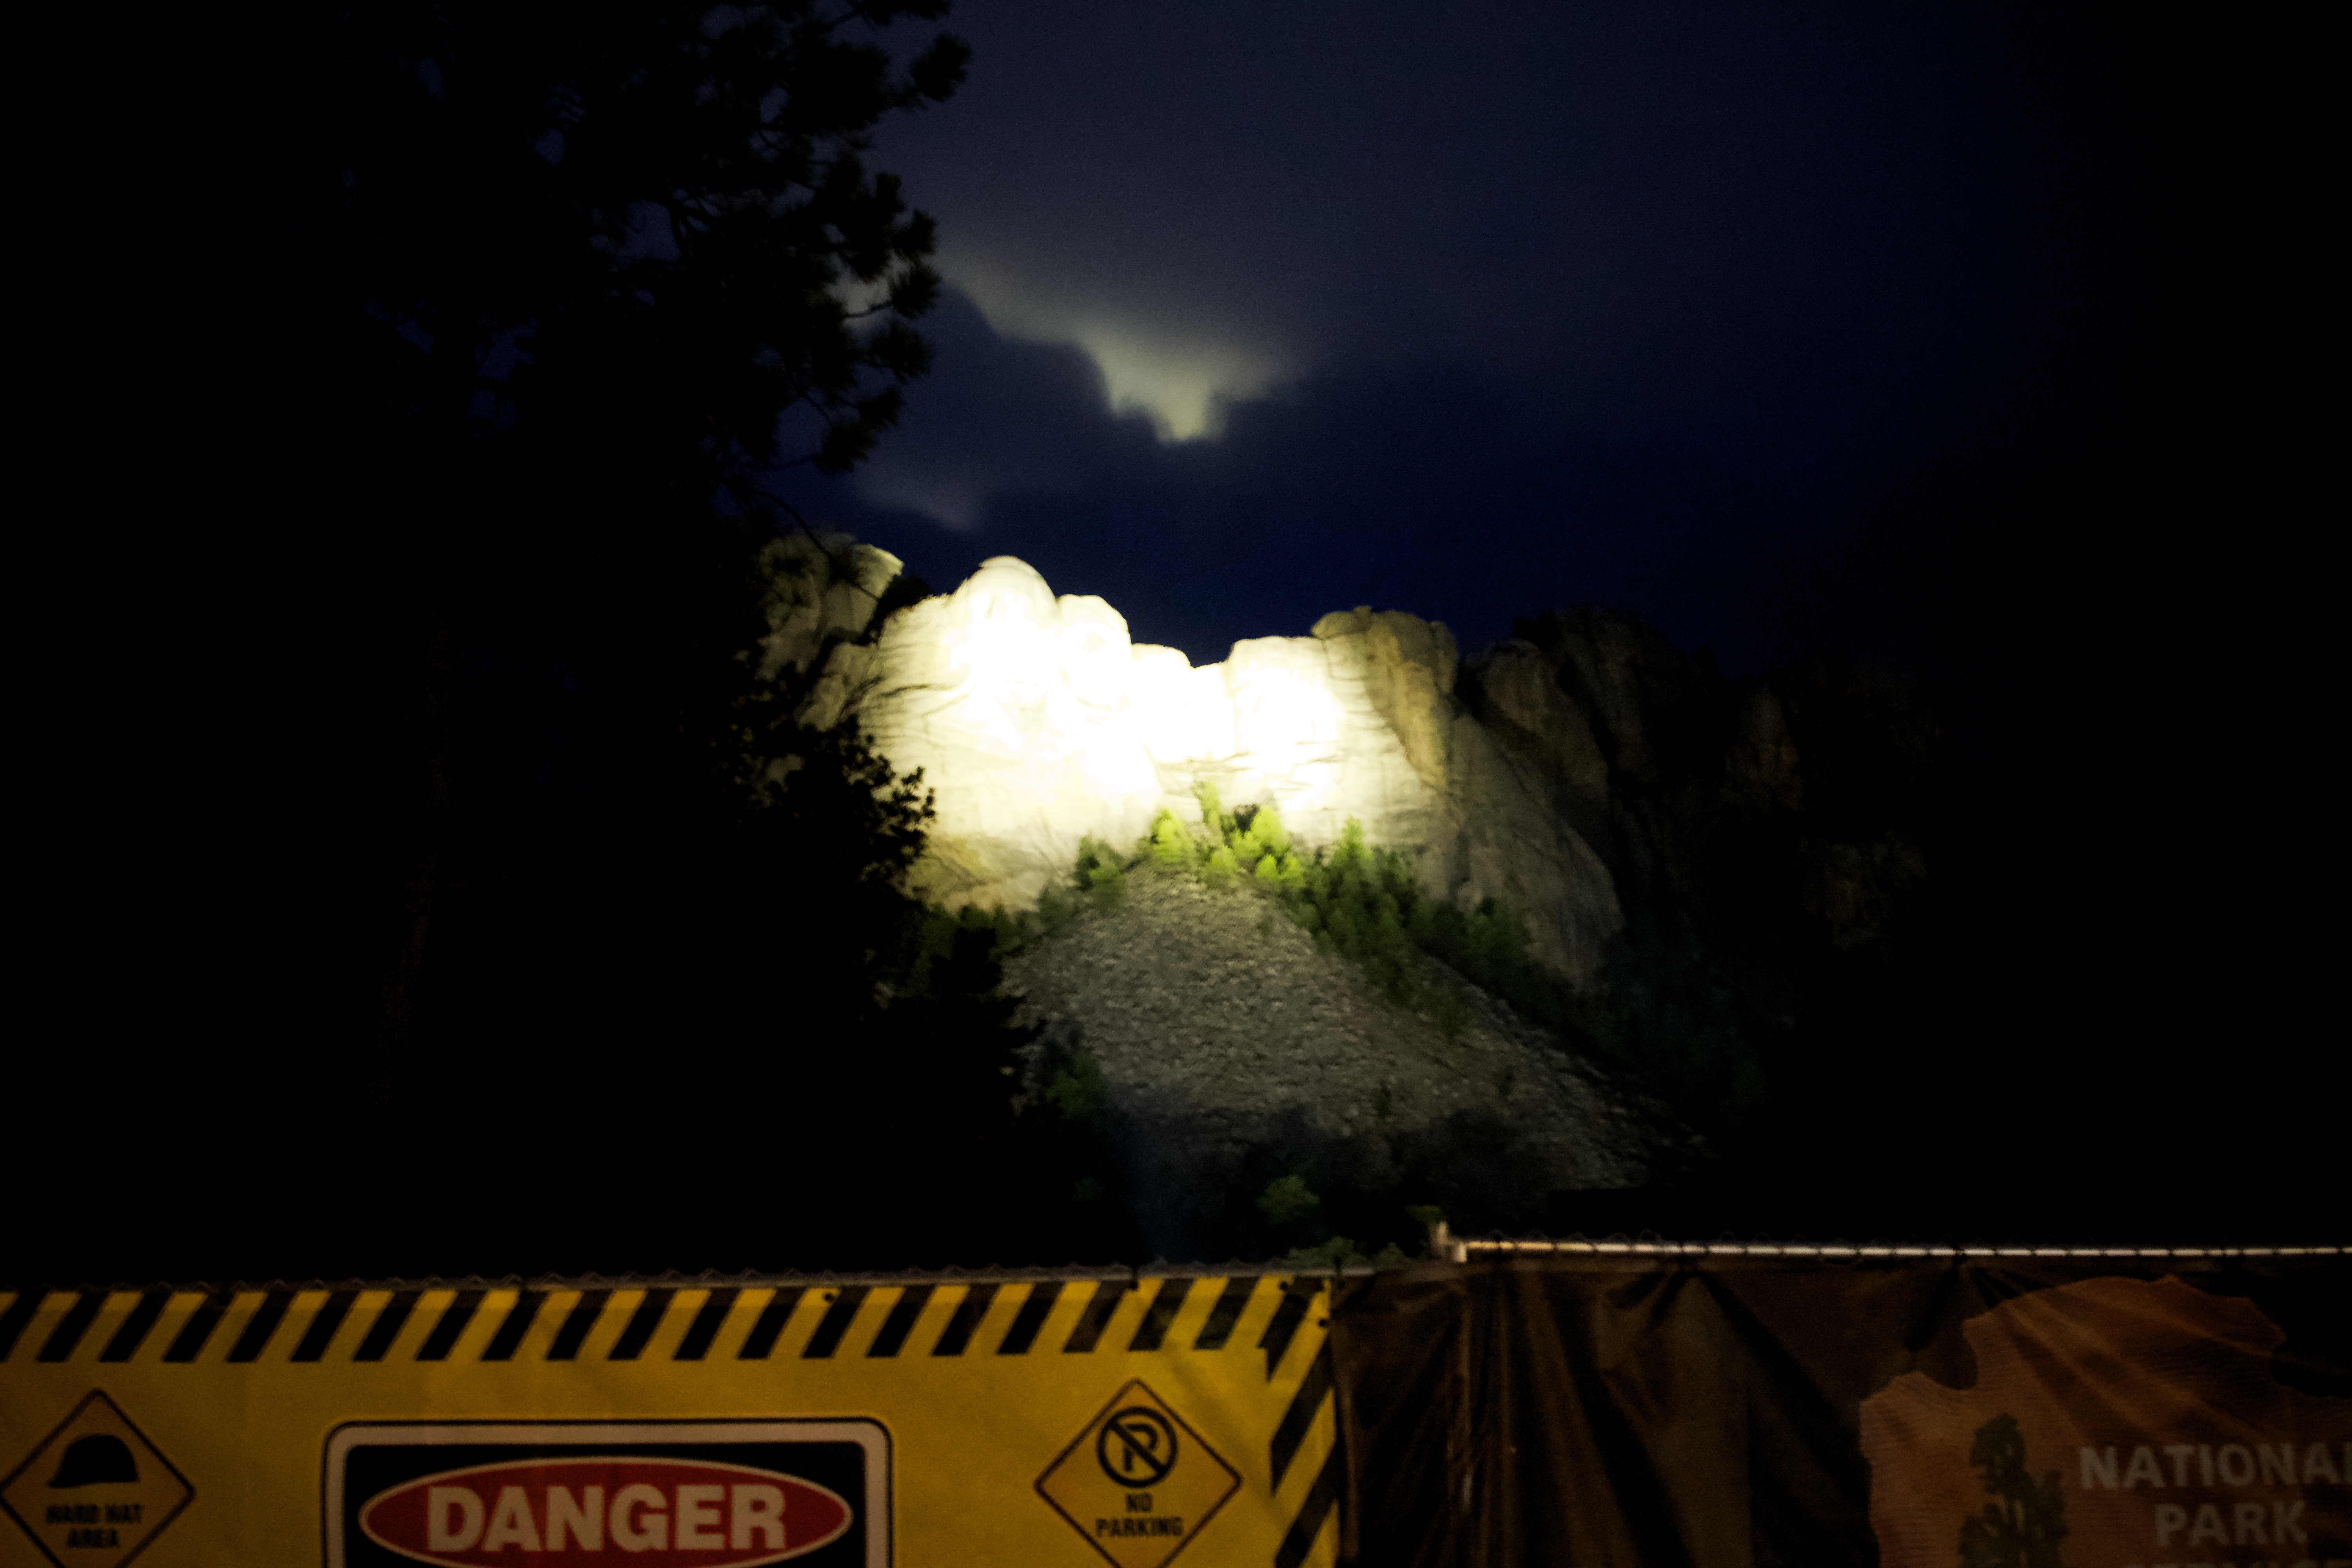 Mount Rushmore lit up at night